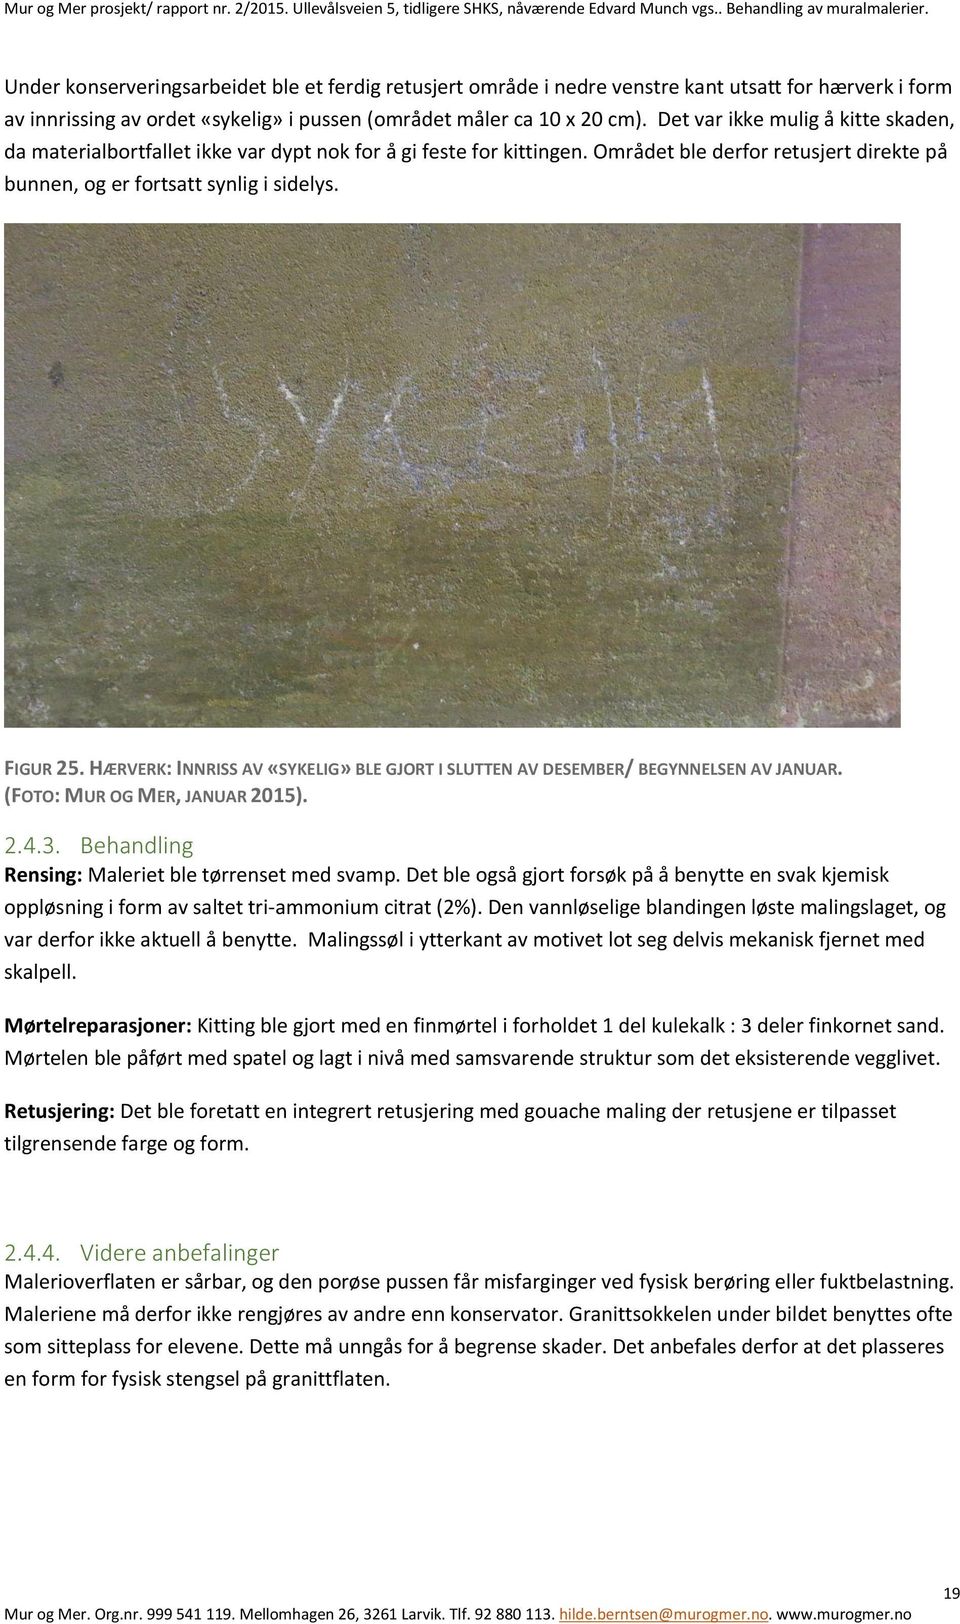 HÆRVERK: INNRISS AV «SYKELIG» BLE GJORT I SLUTTEN AV DESEMBER/ BEGYNNELSEN AV JANUAR. (FOTO: MUR OG MER, JANUAR 2015). 2.4.3. Behandling Rensing: Maleriet ble tørrenset med svamp.